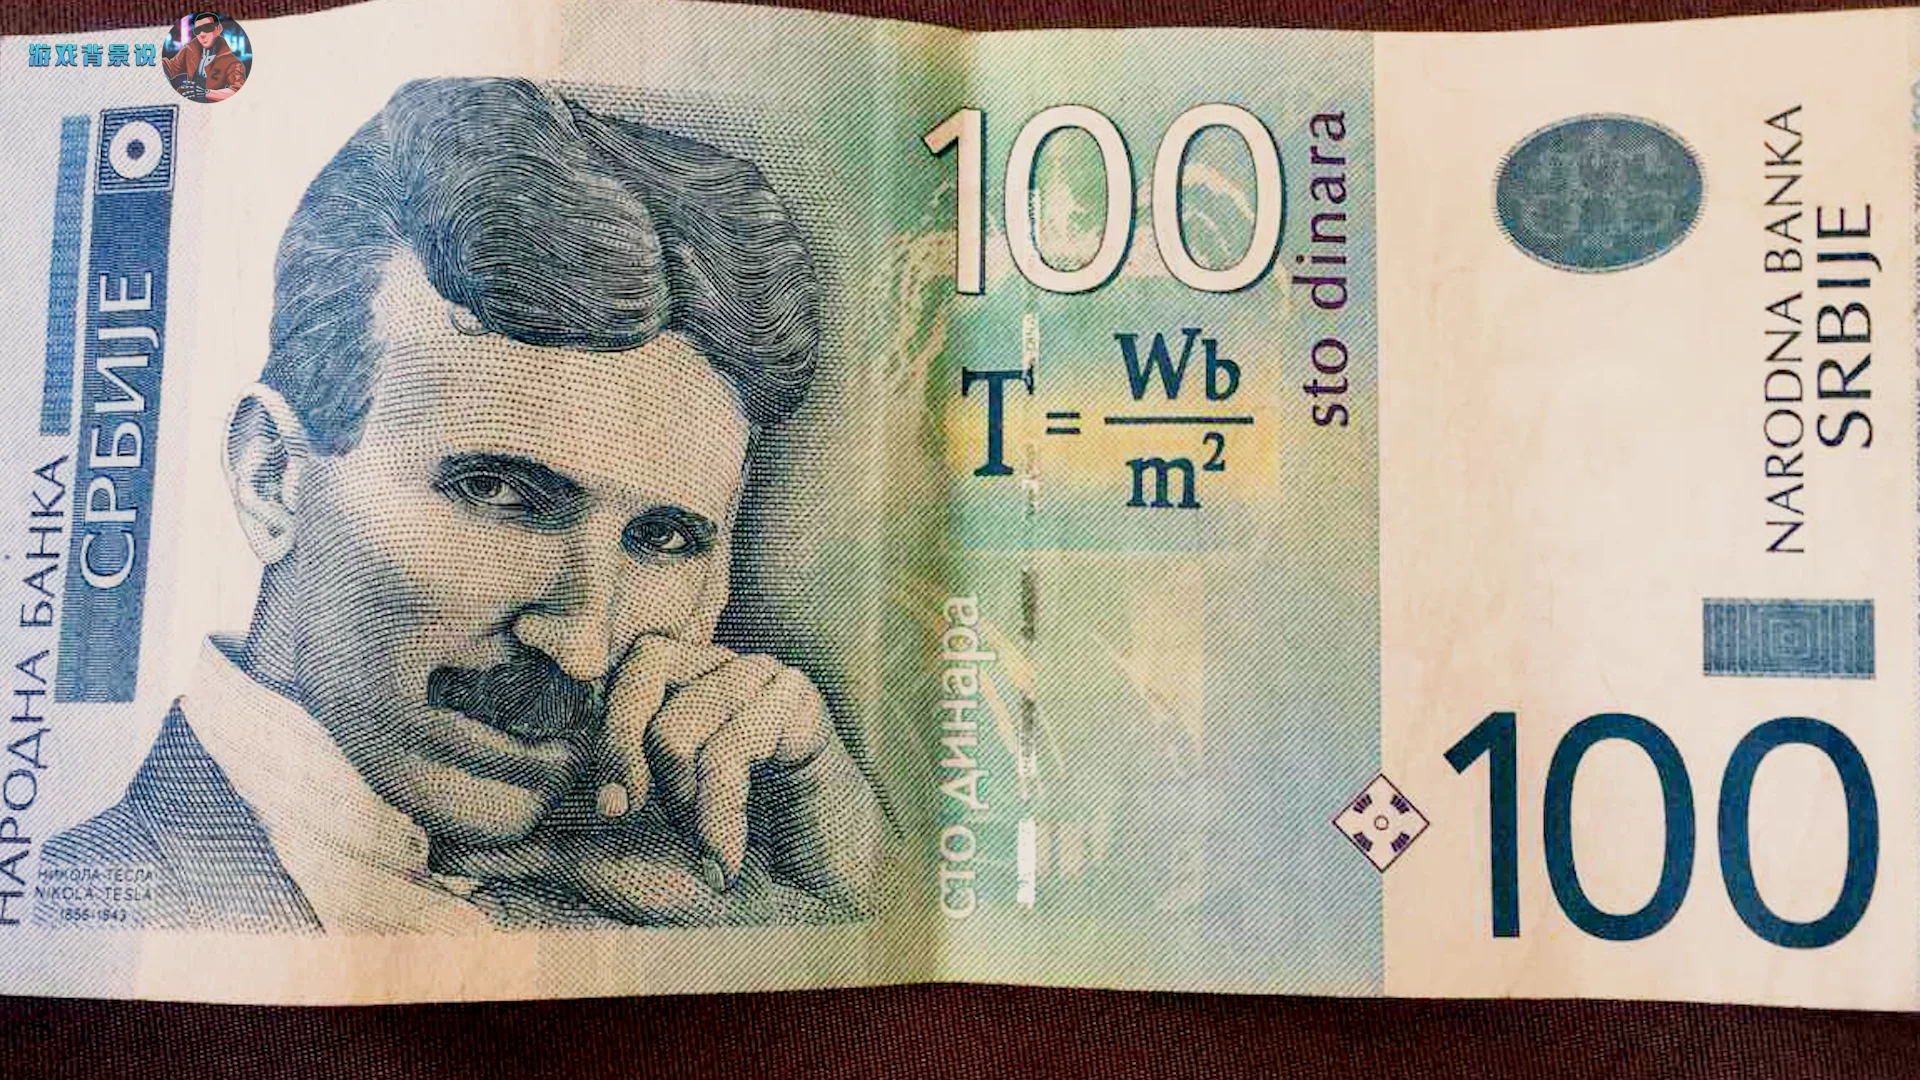 甚至塞尔维亚货币都印着特斯拉头像